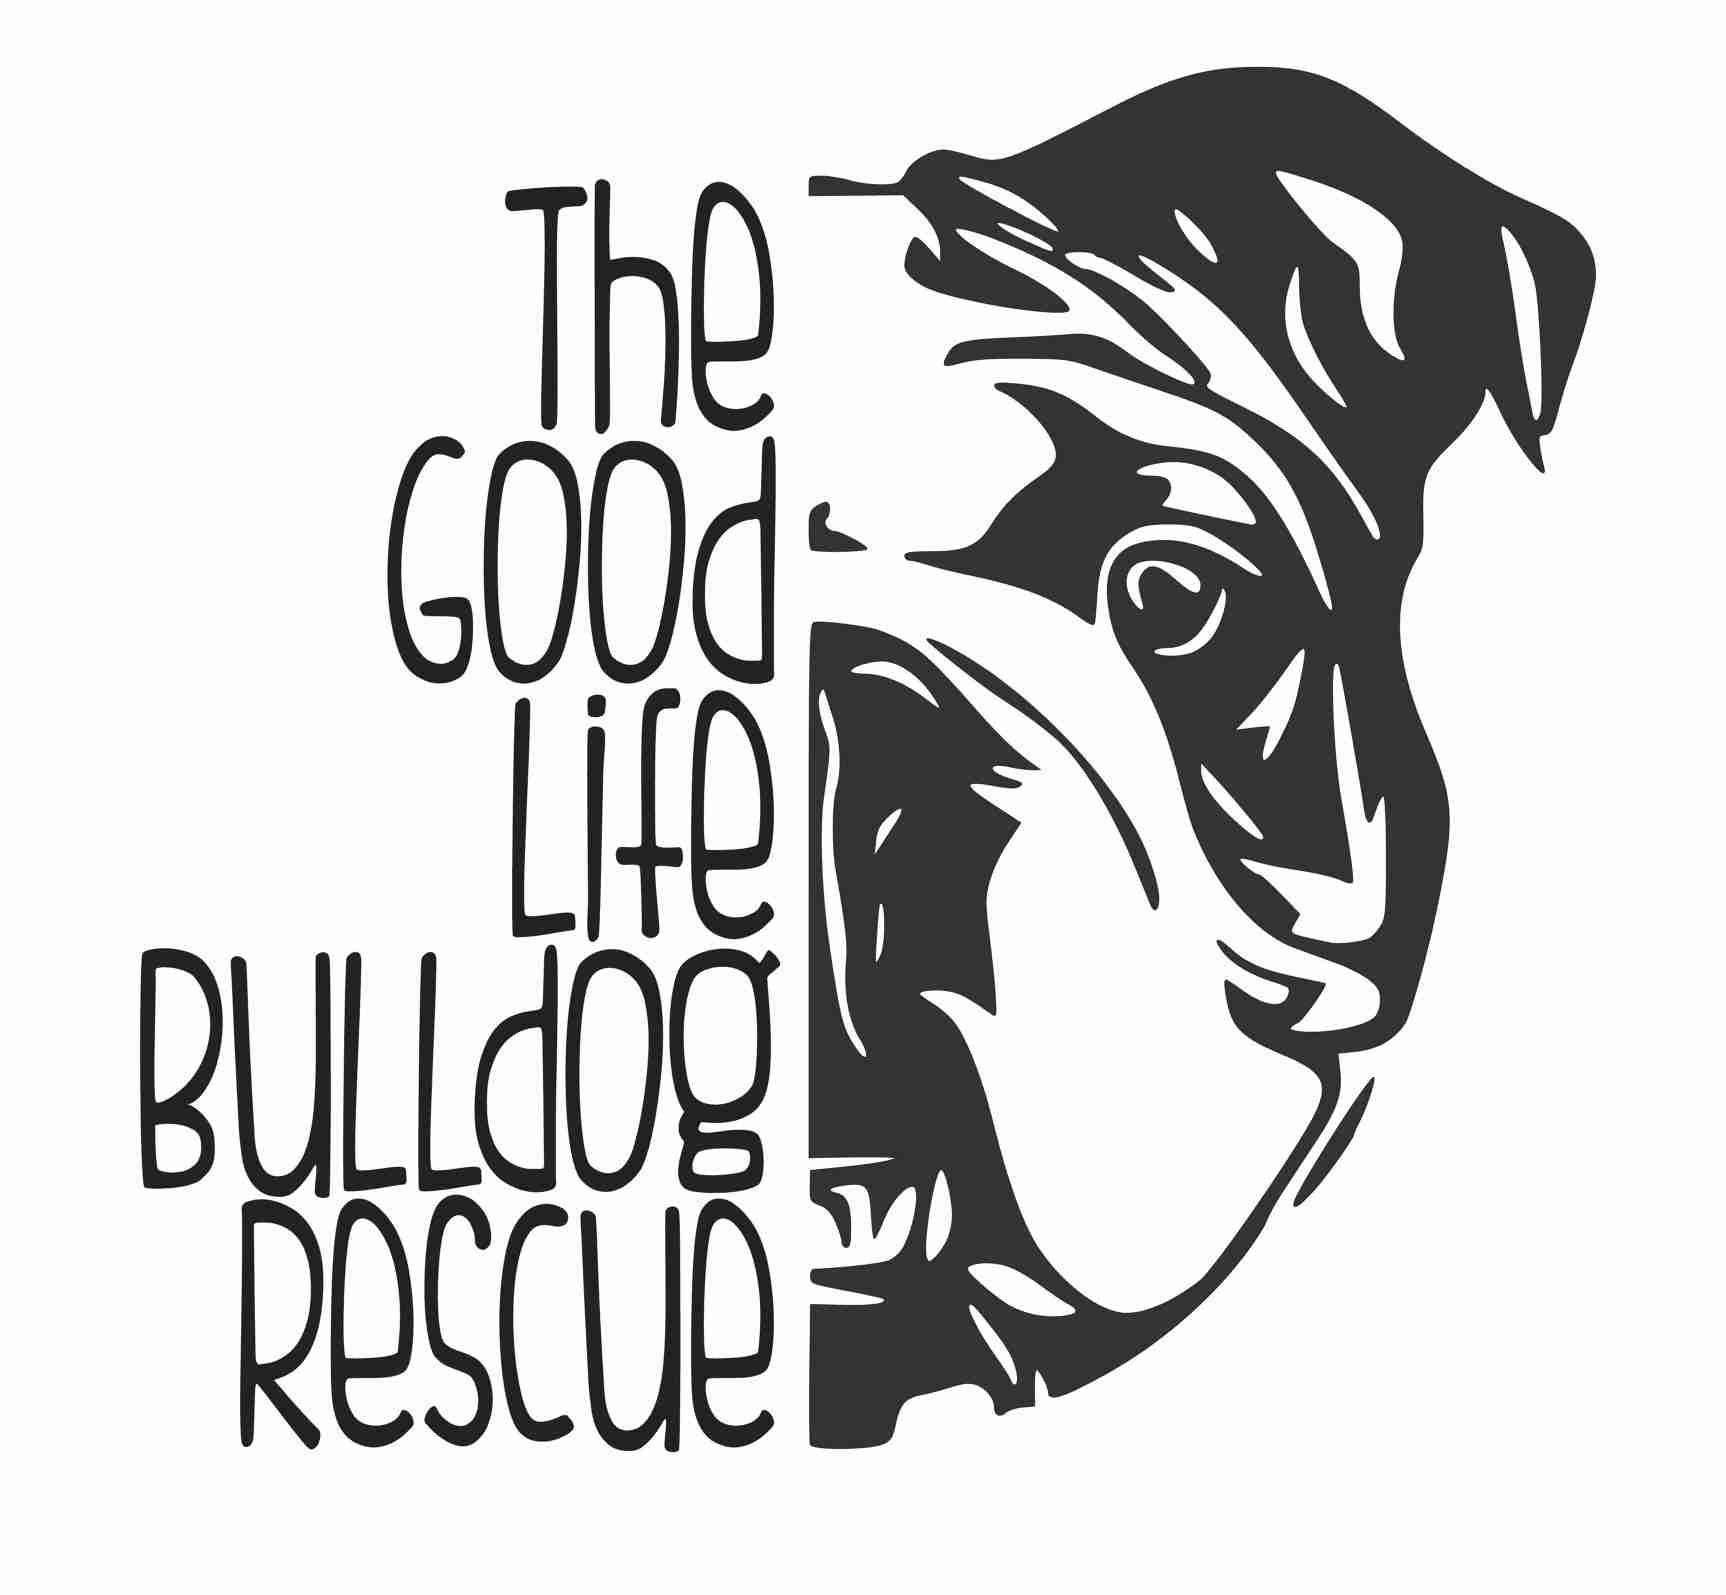 good life bulldog rescue logo